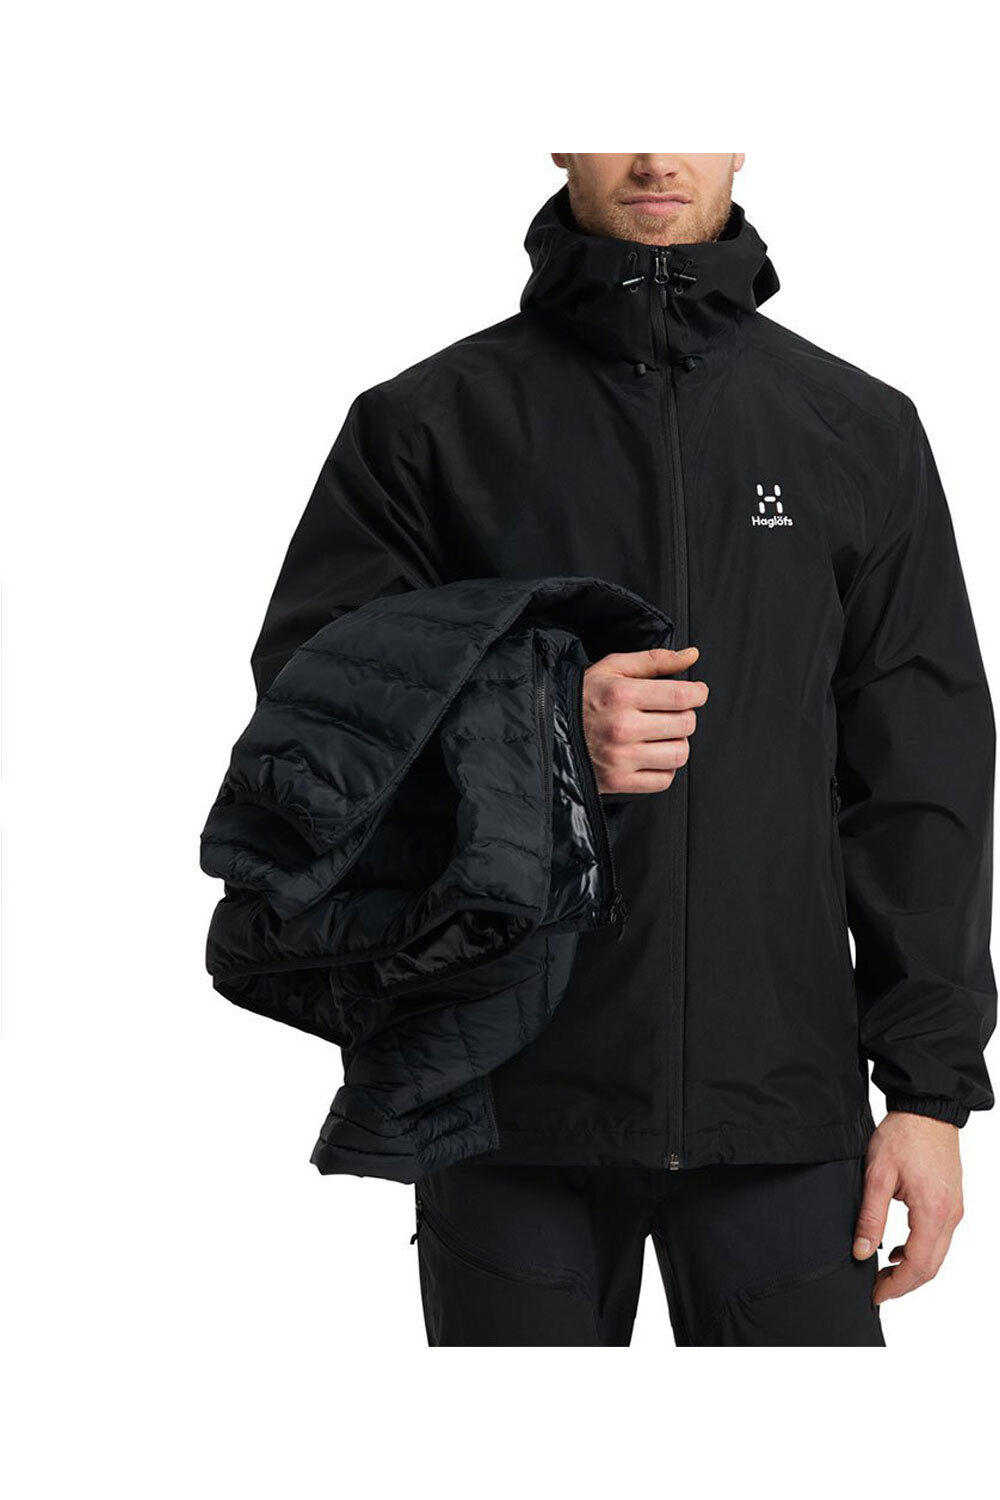 Haglofs chaqueta impermeable insulada hombre Eldstad 3-in-1 Mimic GTX Jacket Men 04